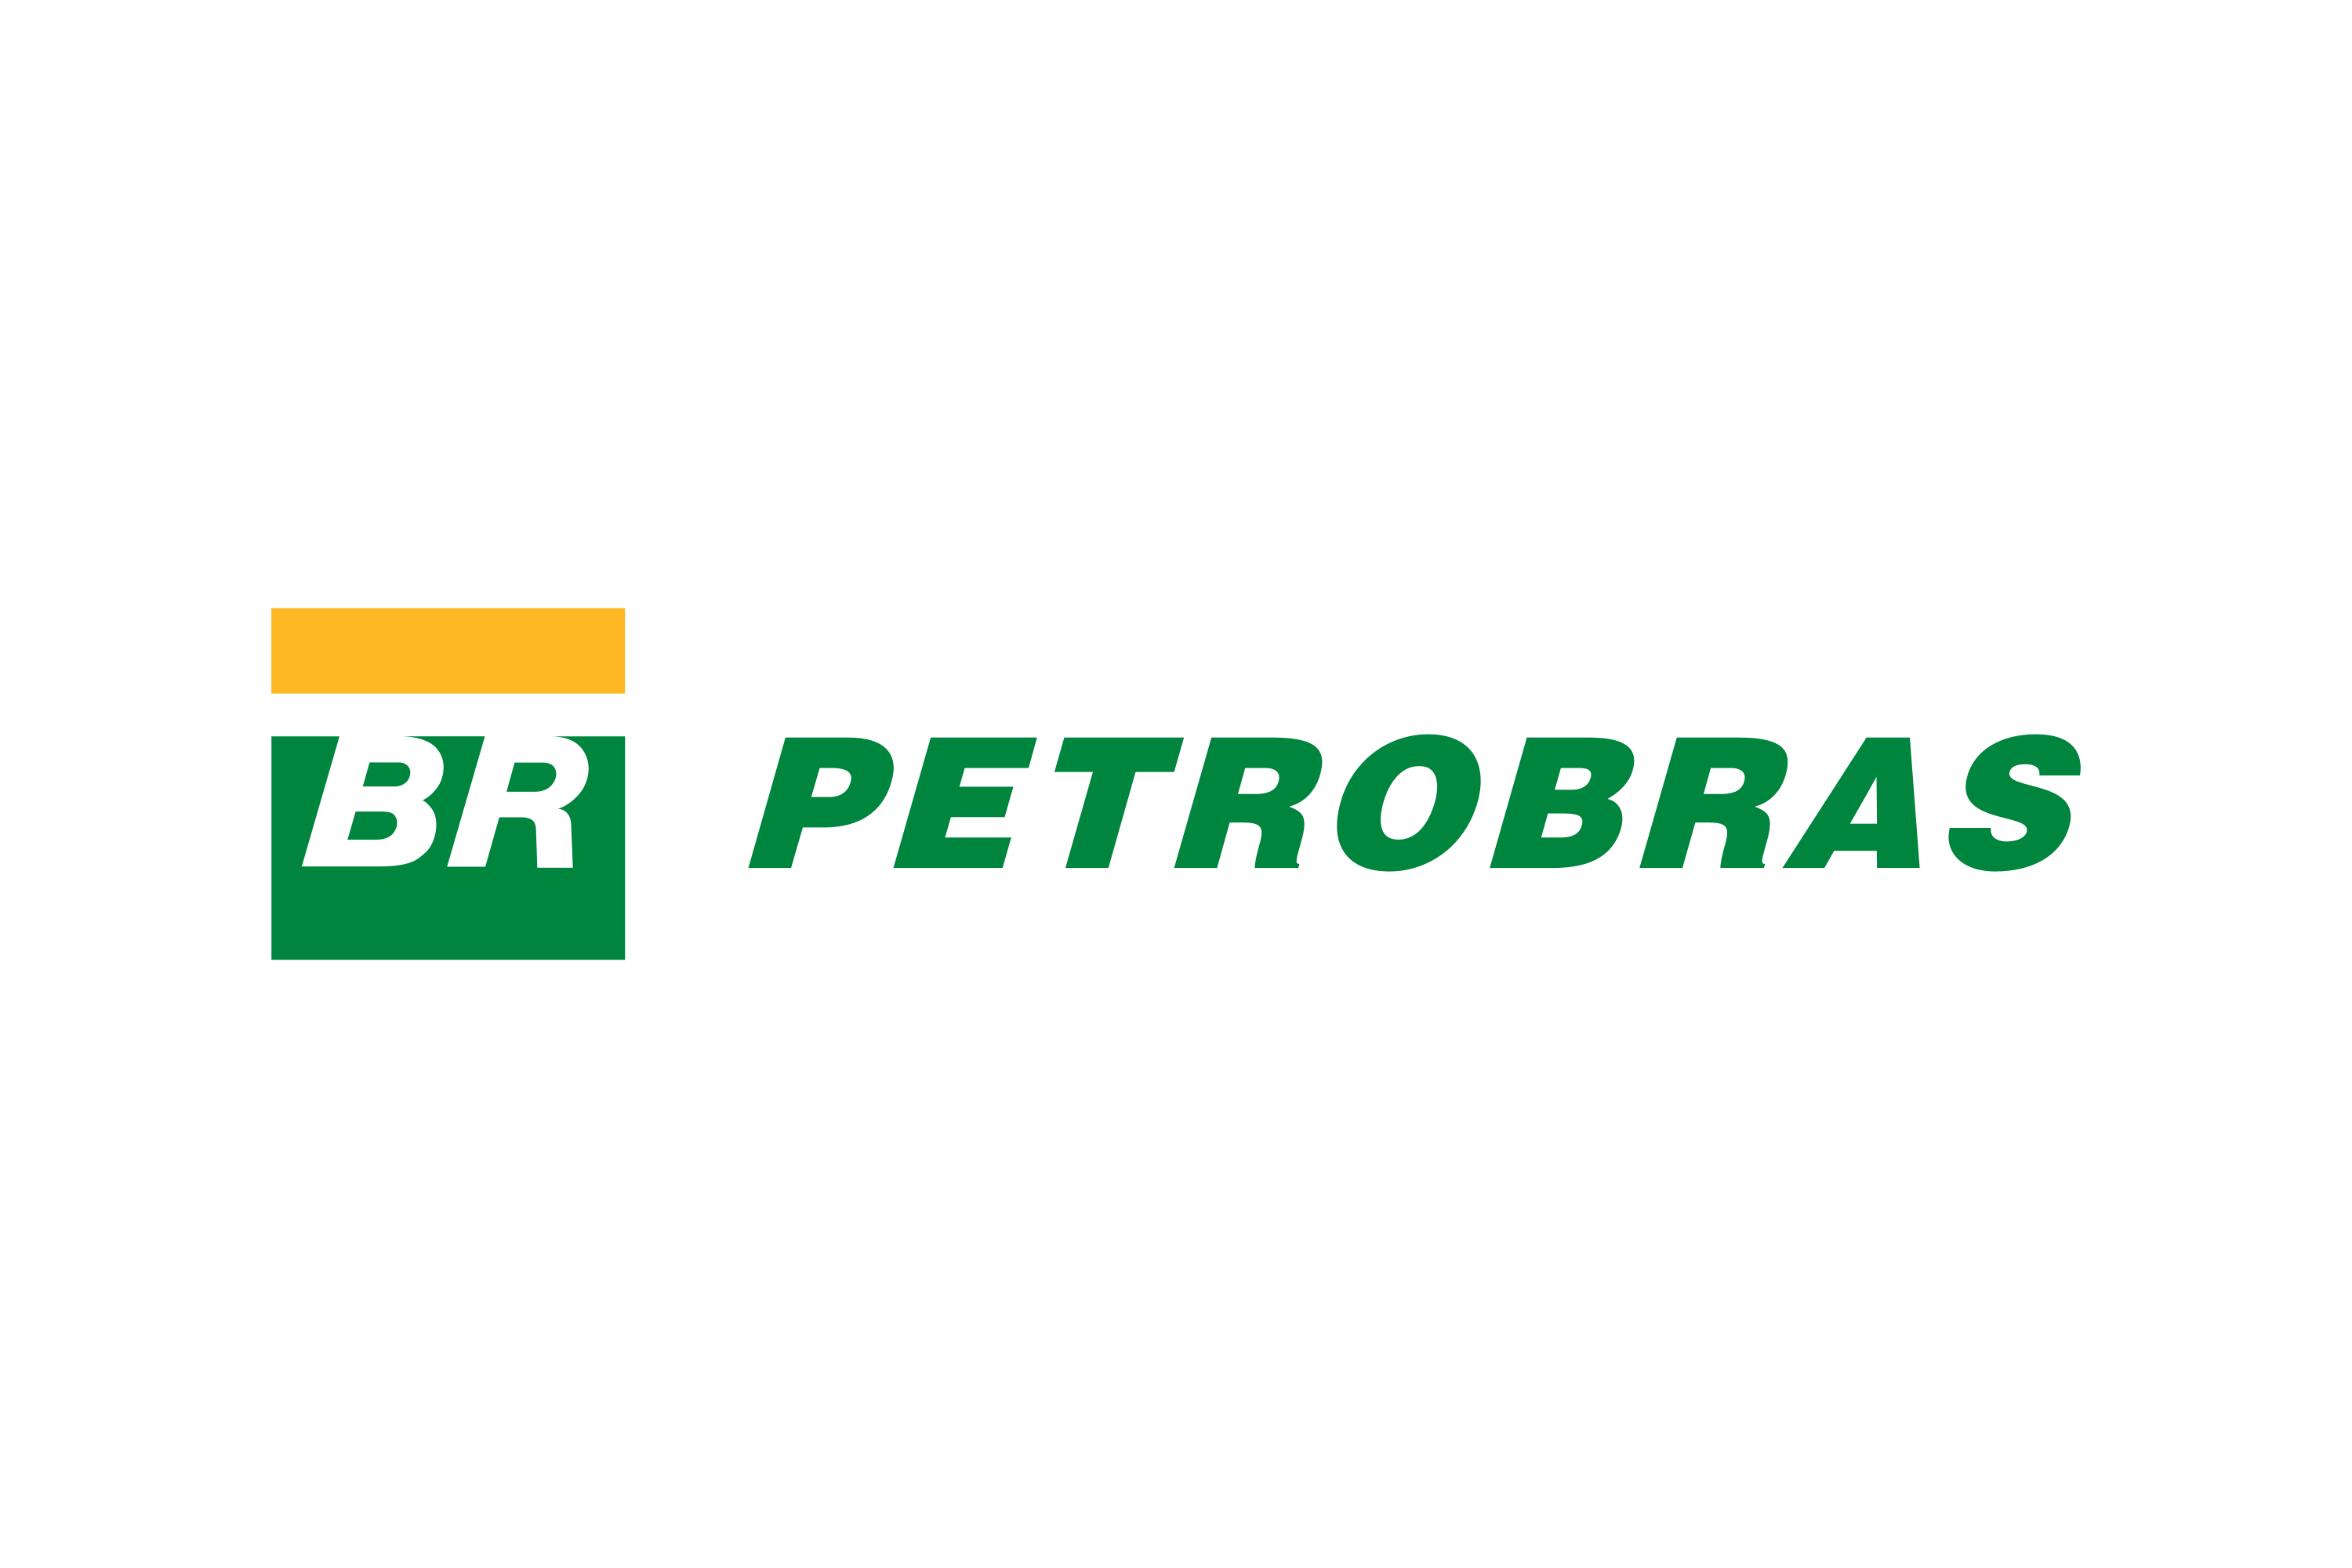 Download Petrobras Logo in SVG Vector or PNG File Format - Logo.wine